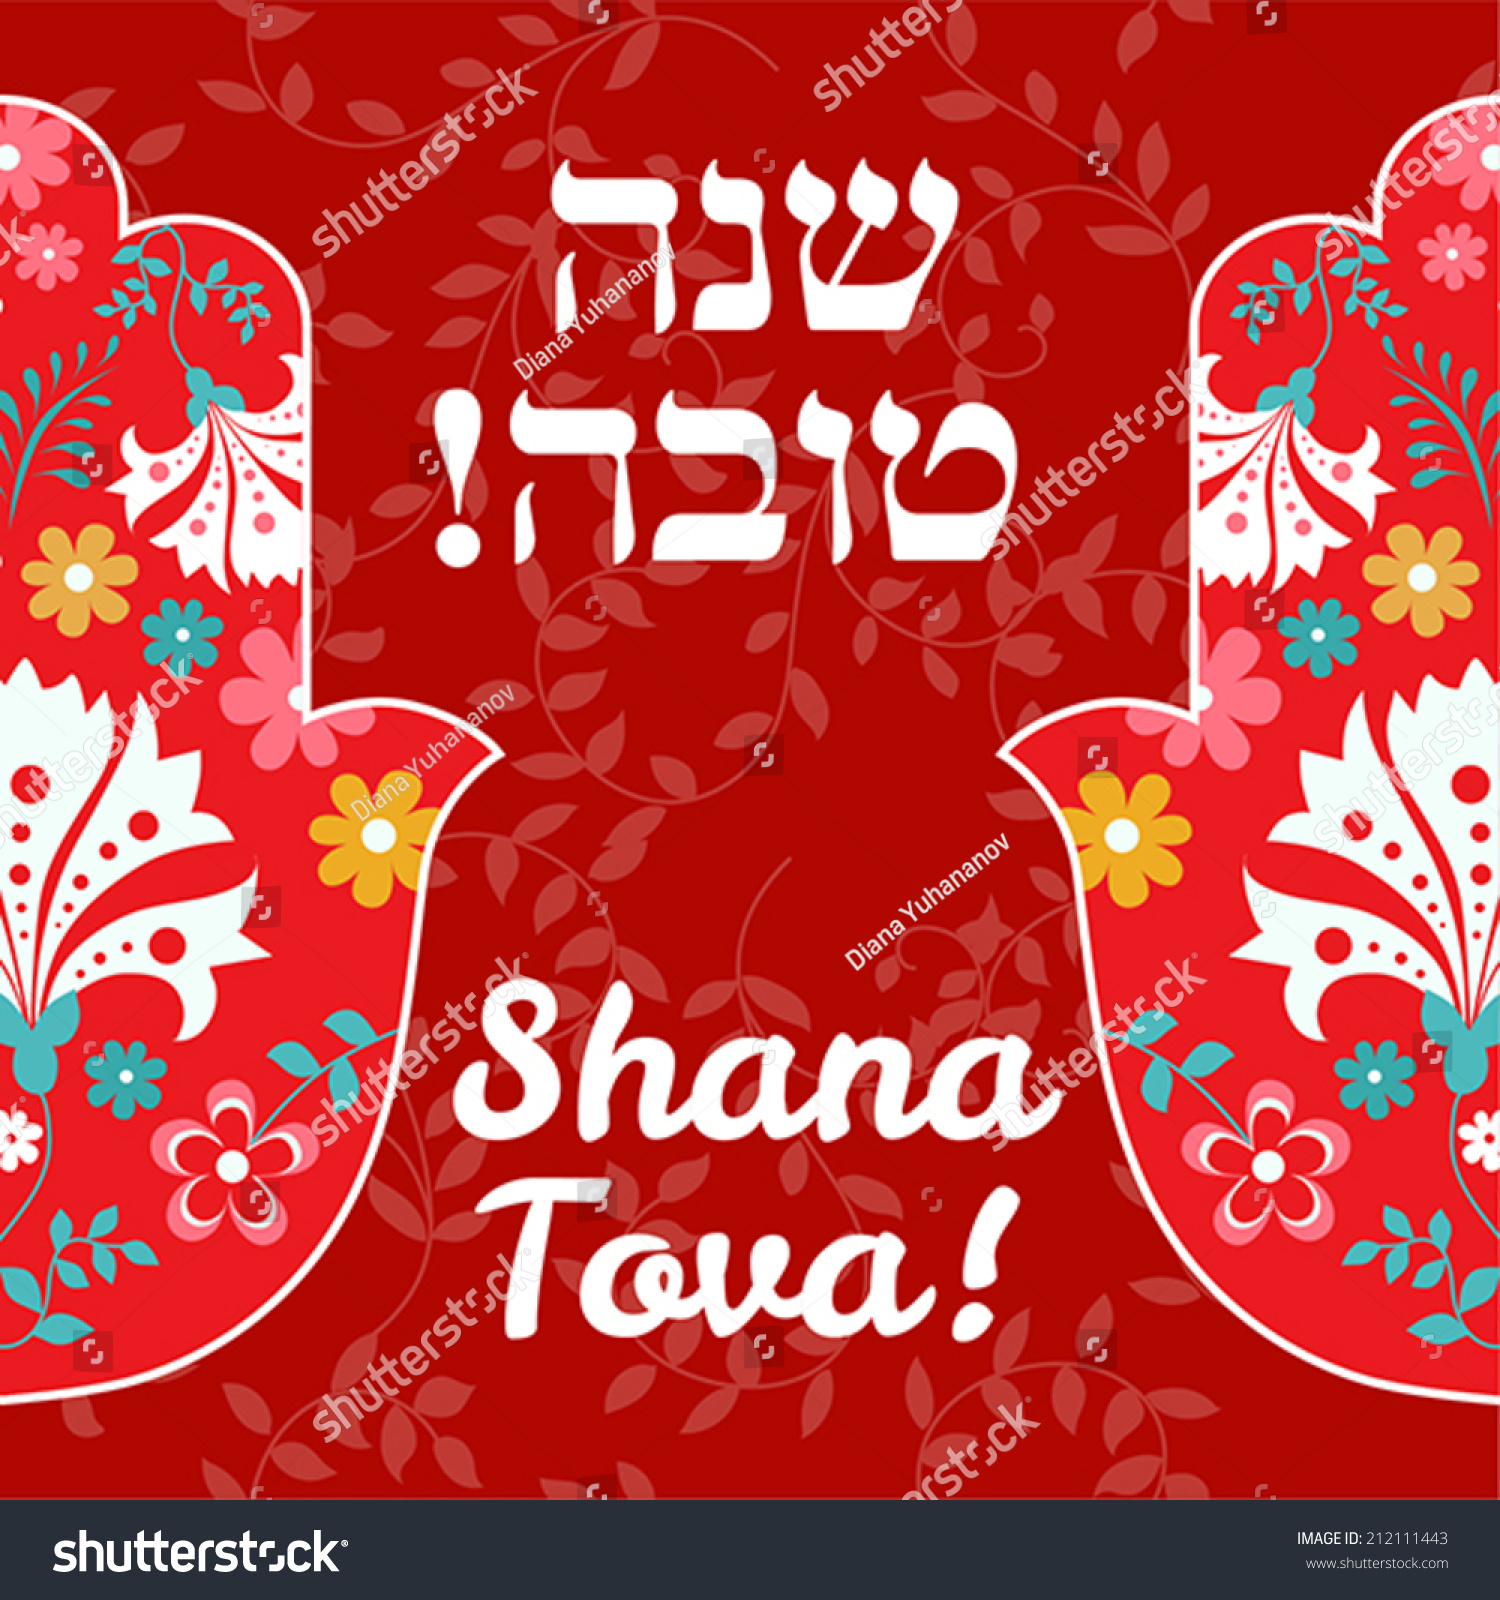 Shana Tova Card. Happy Jewish New Year Card With Hebrew Text - Happy